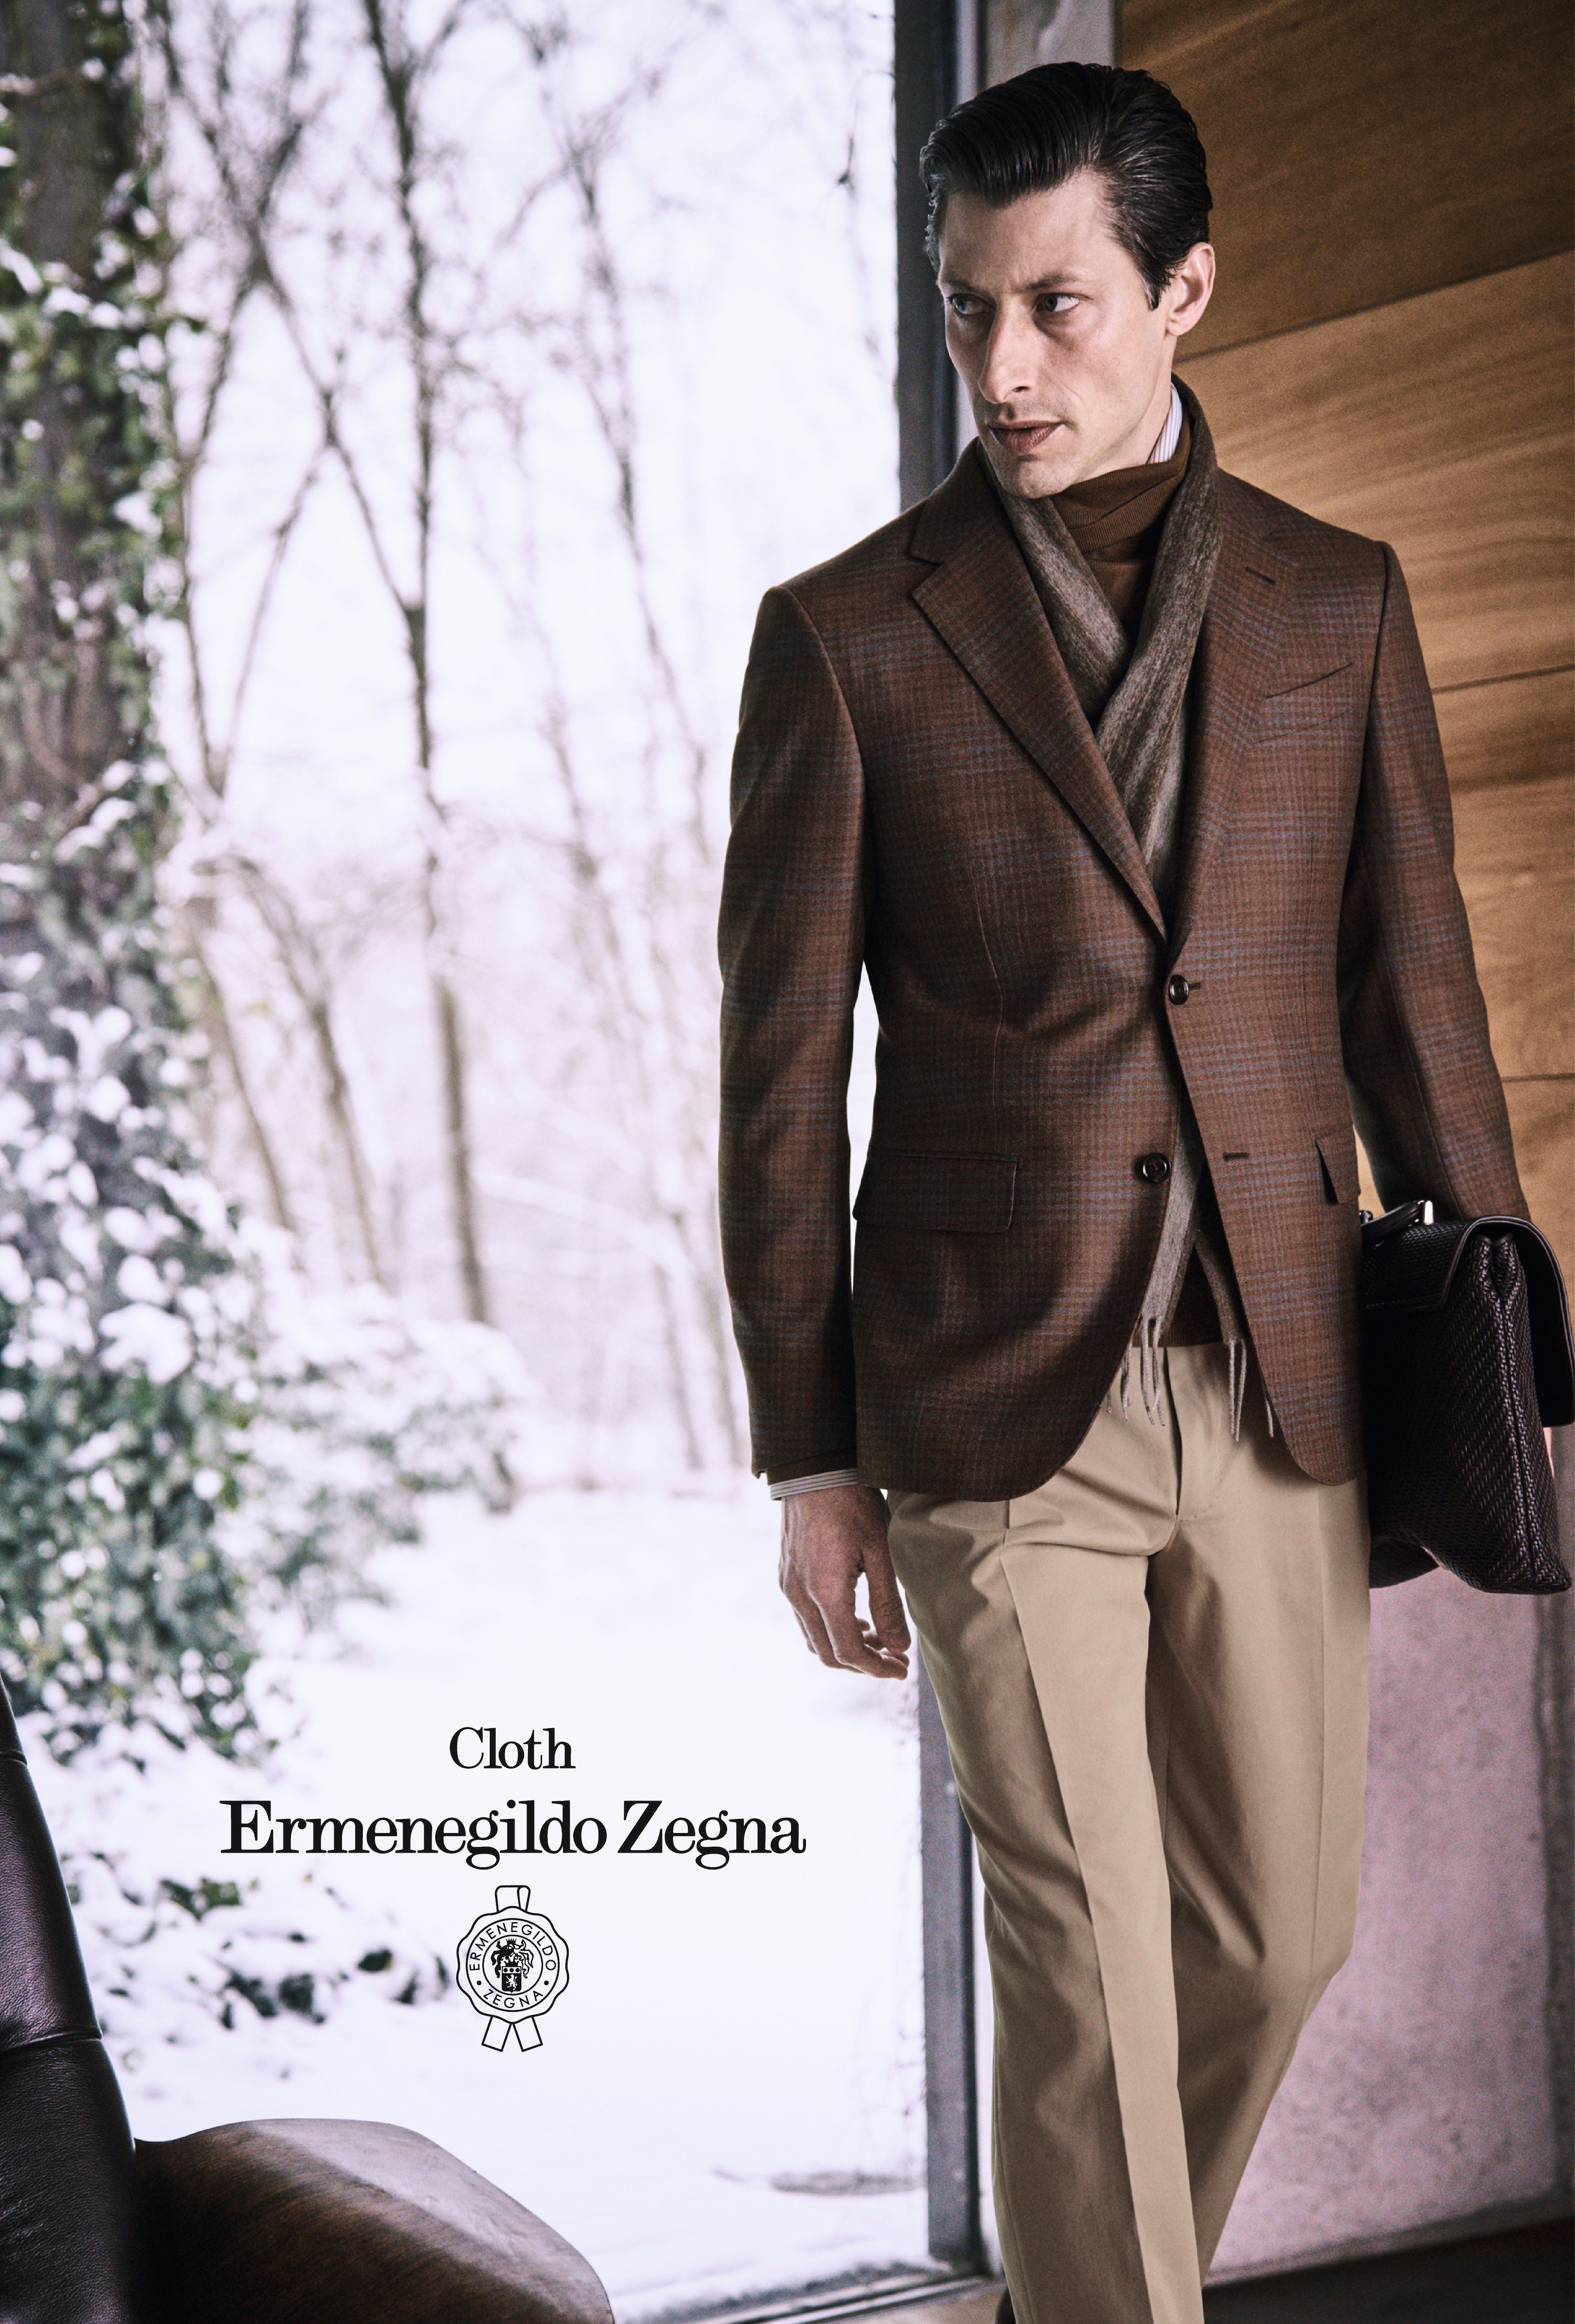 Cloth by Ermenegildo Zegna